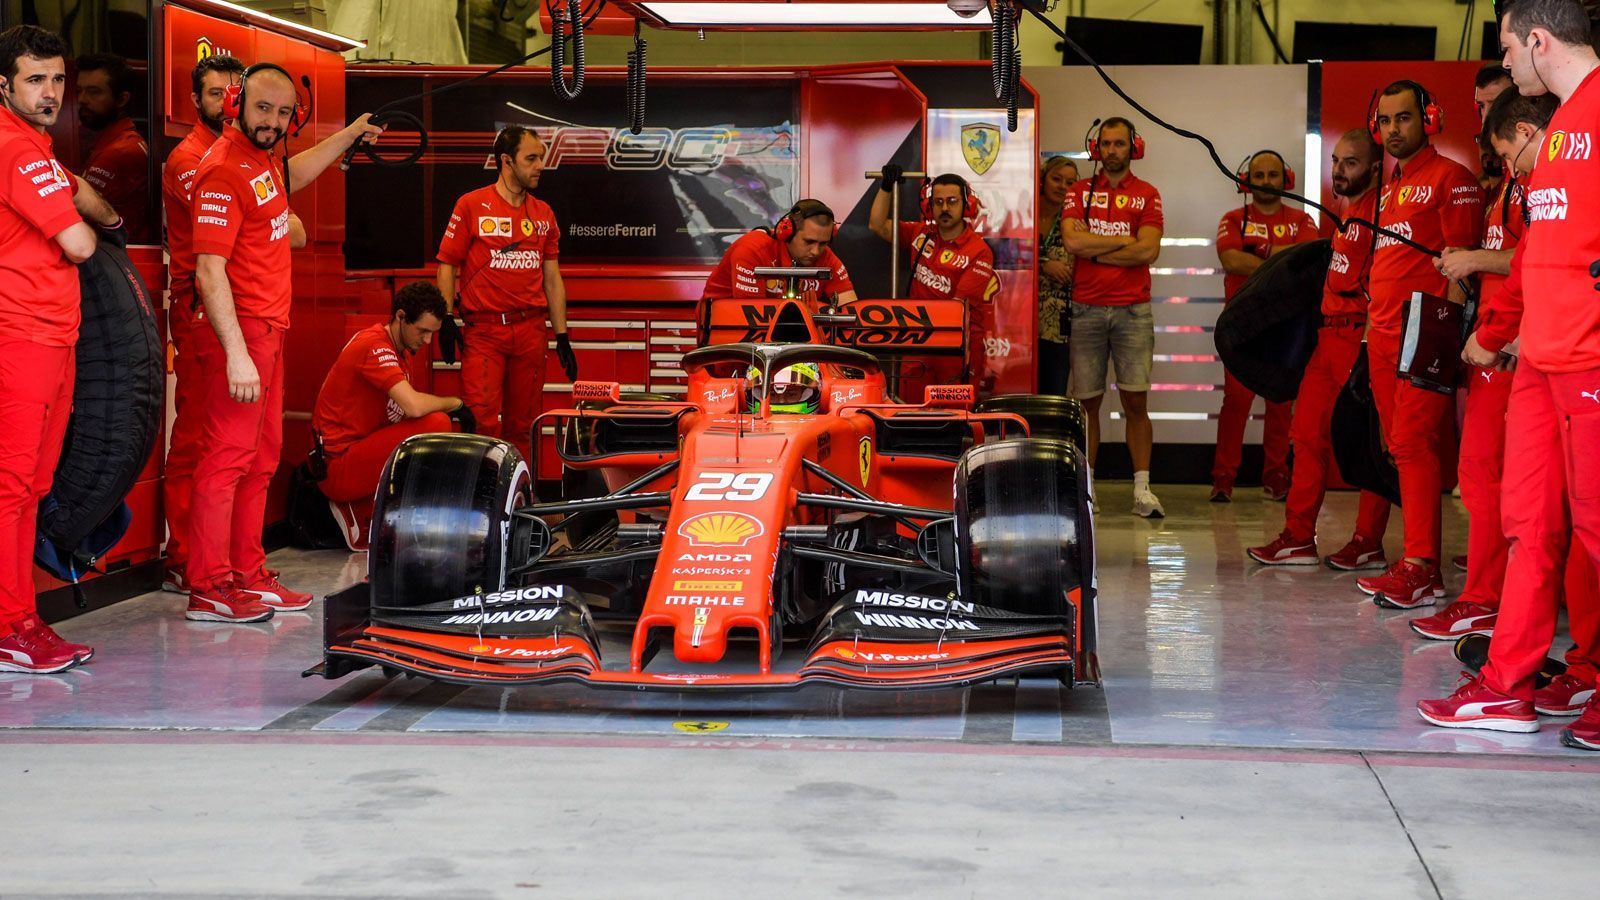 
                <strong>Mick Schumachers F1-Test im Ferrari</strong><br>
                Bevor der Testbetrieb auf der Rennstrecke in Bahrain startete, war die Ferrari-Box durch Sichtschutzwände vor den Blicken der zahlreichen Journalisten und Experten geschützt. Knapp zehn Minuten nachdem die Boxenampel auf grün umgesprungen war, durfte dann auch Mick Schumacher loslegen. Unter Blitzlichtgewitter fuhr er erstmals mit einem Ferrari raus auf die Strecke.
              